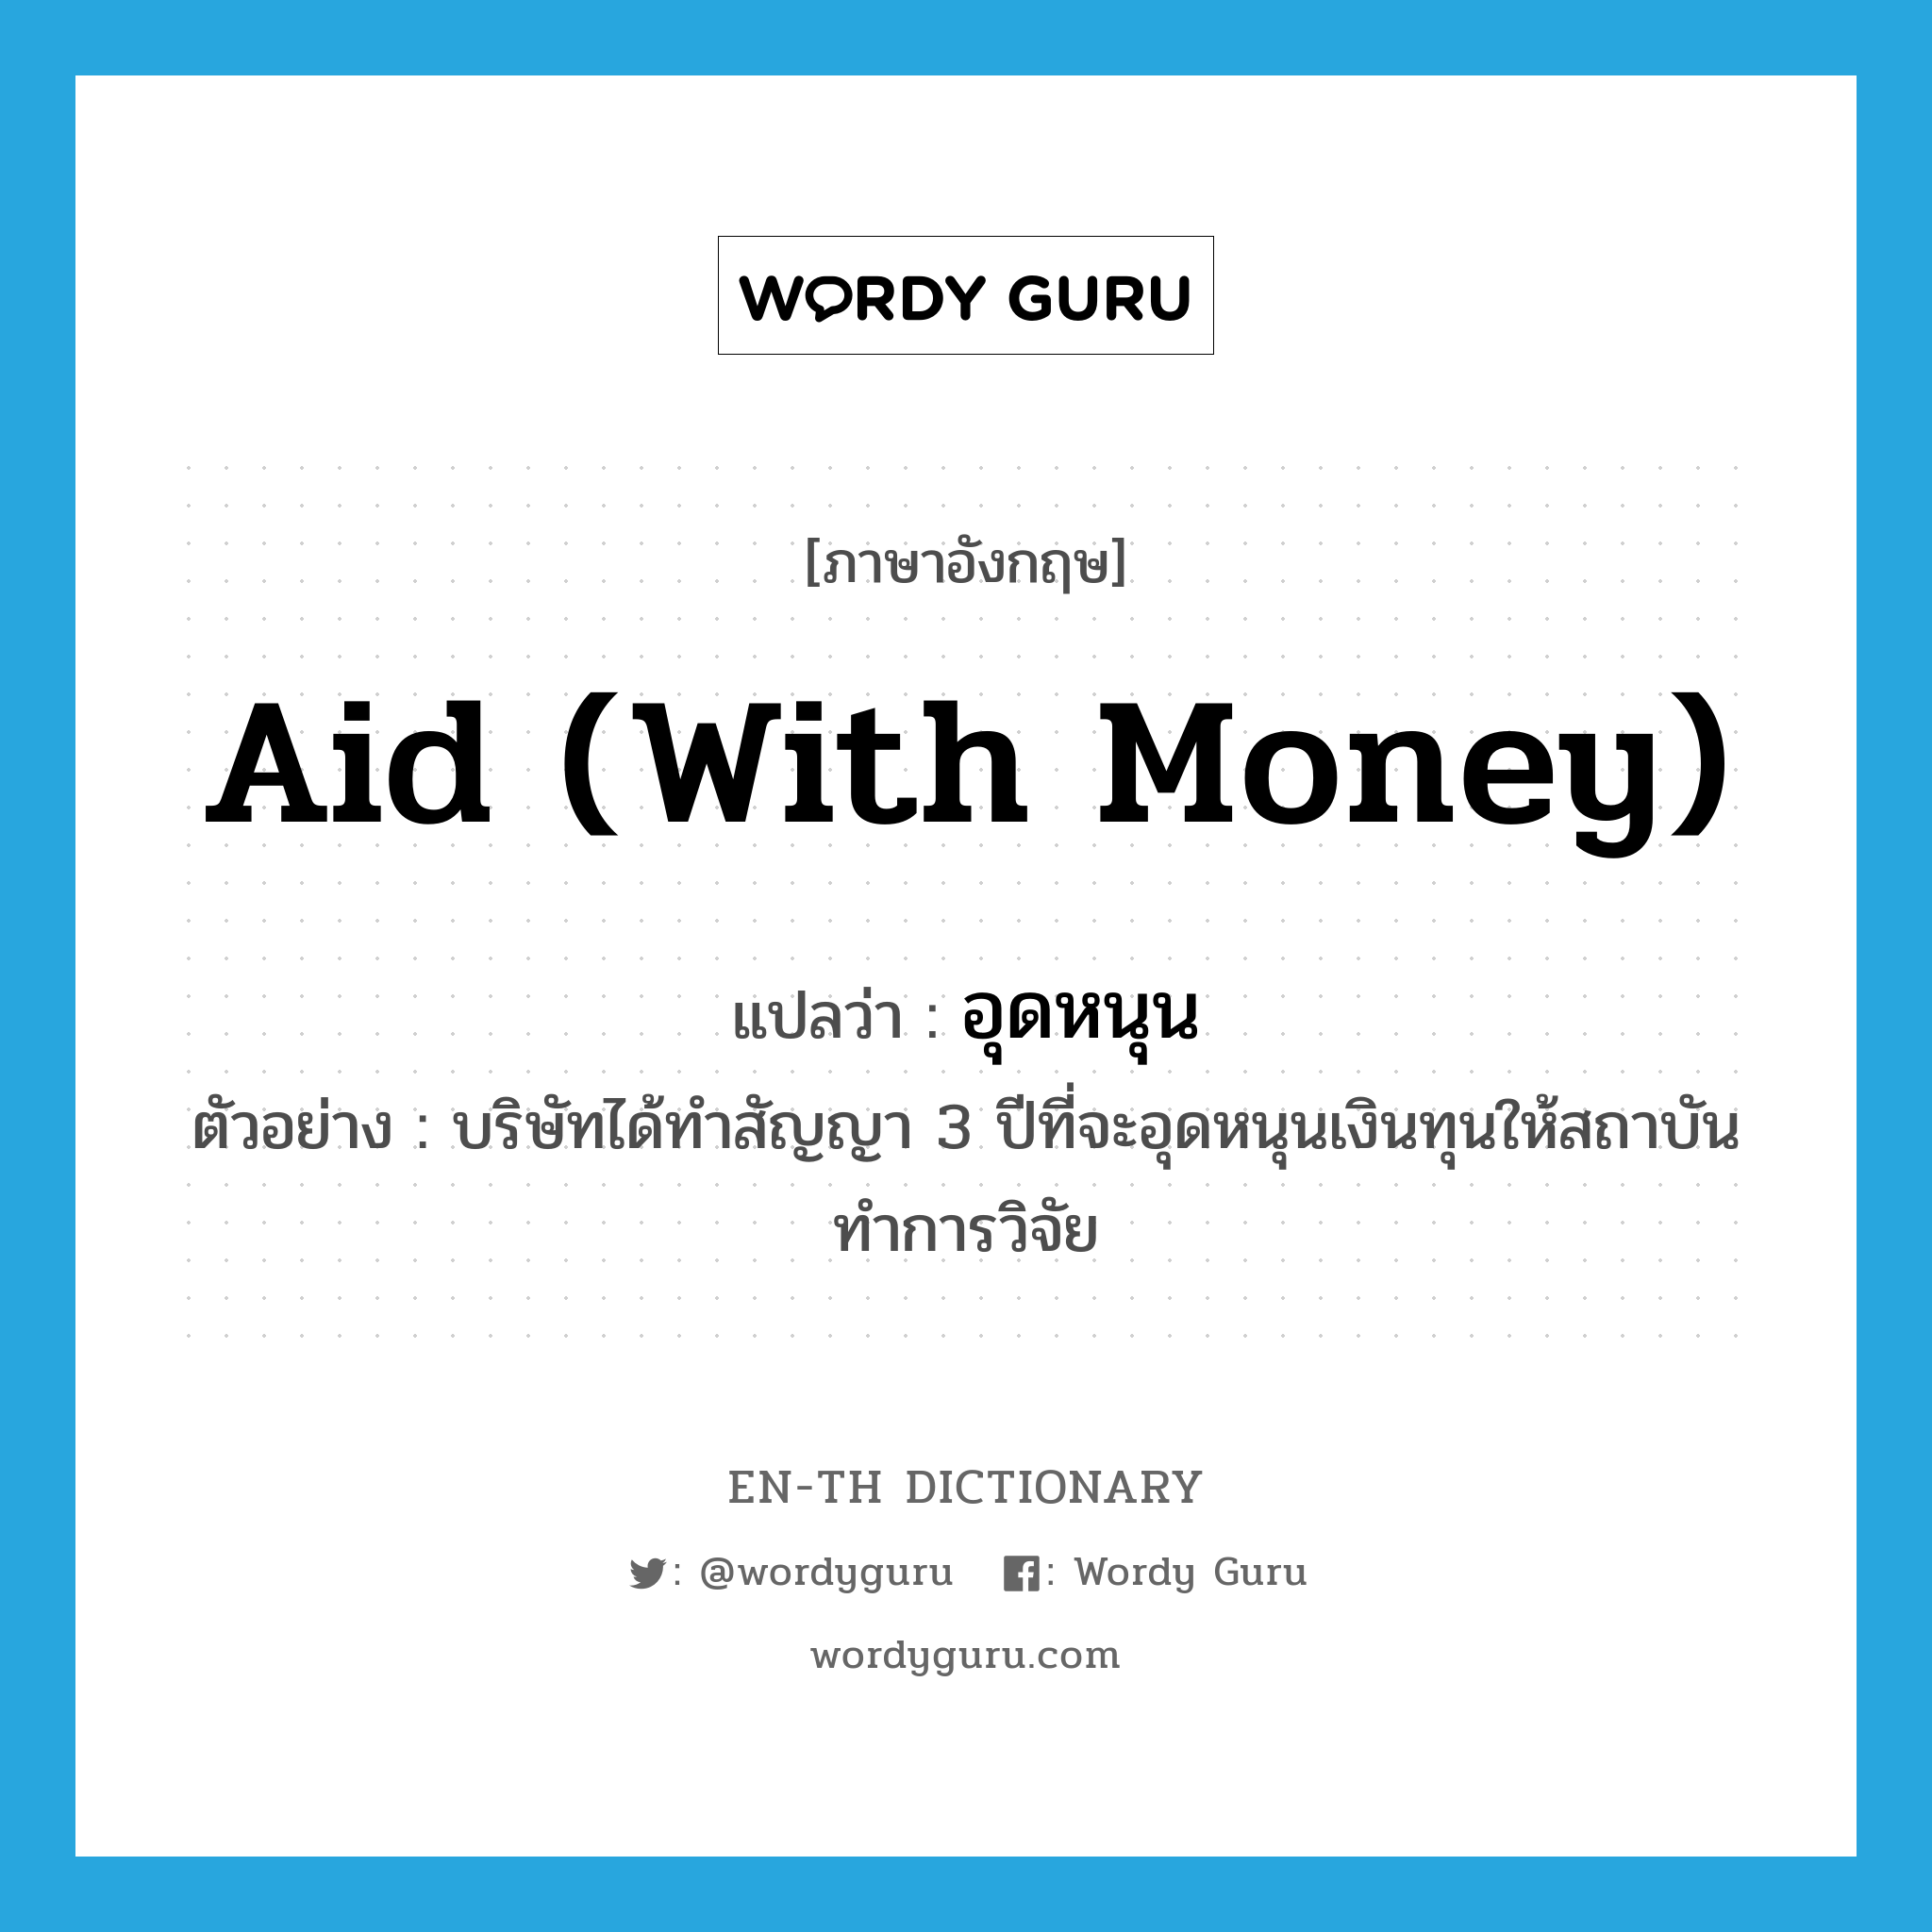 aid (with money) แปลว่า?, คำศัพท์ภาษาอังกฤษ aid (with money) แปลว่า อุดหนุน ประเภท V ตัวอย่าง บริษัทได้ทำสัญญา 3 ปีที่จะอุดหนุนเงินทุนให้สถาบันทำการวิจัย หมวด V